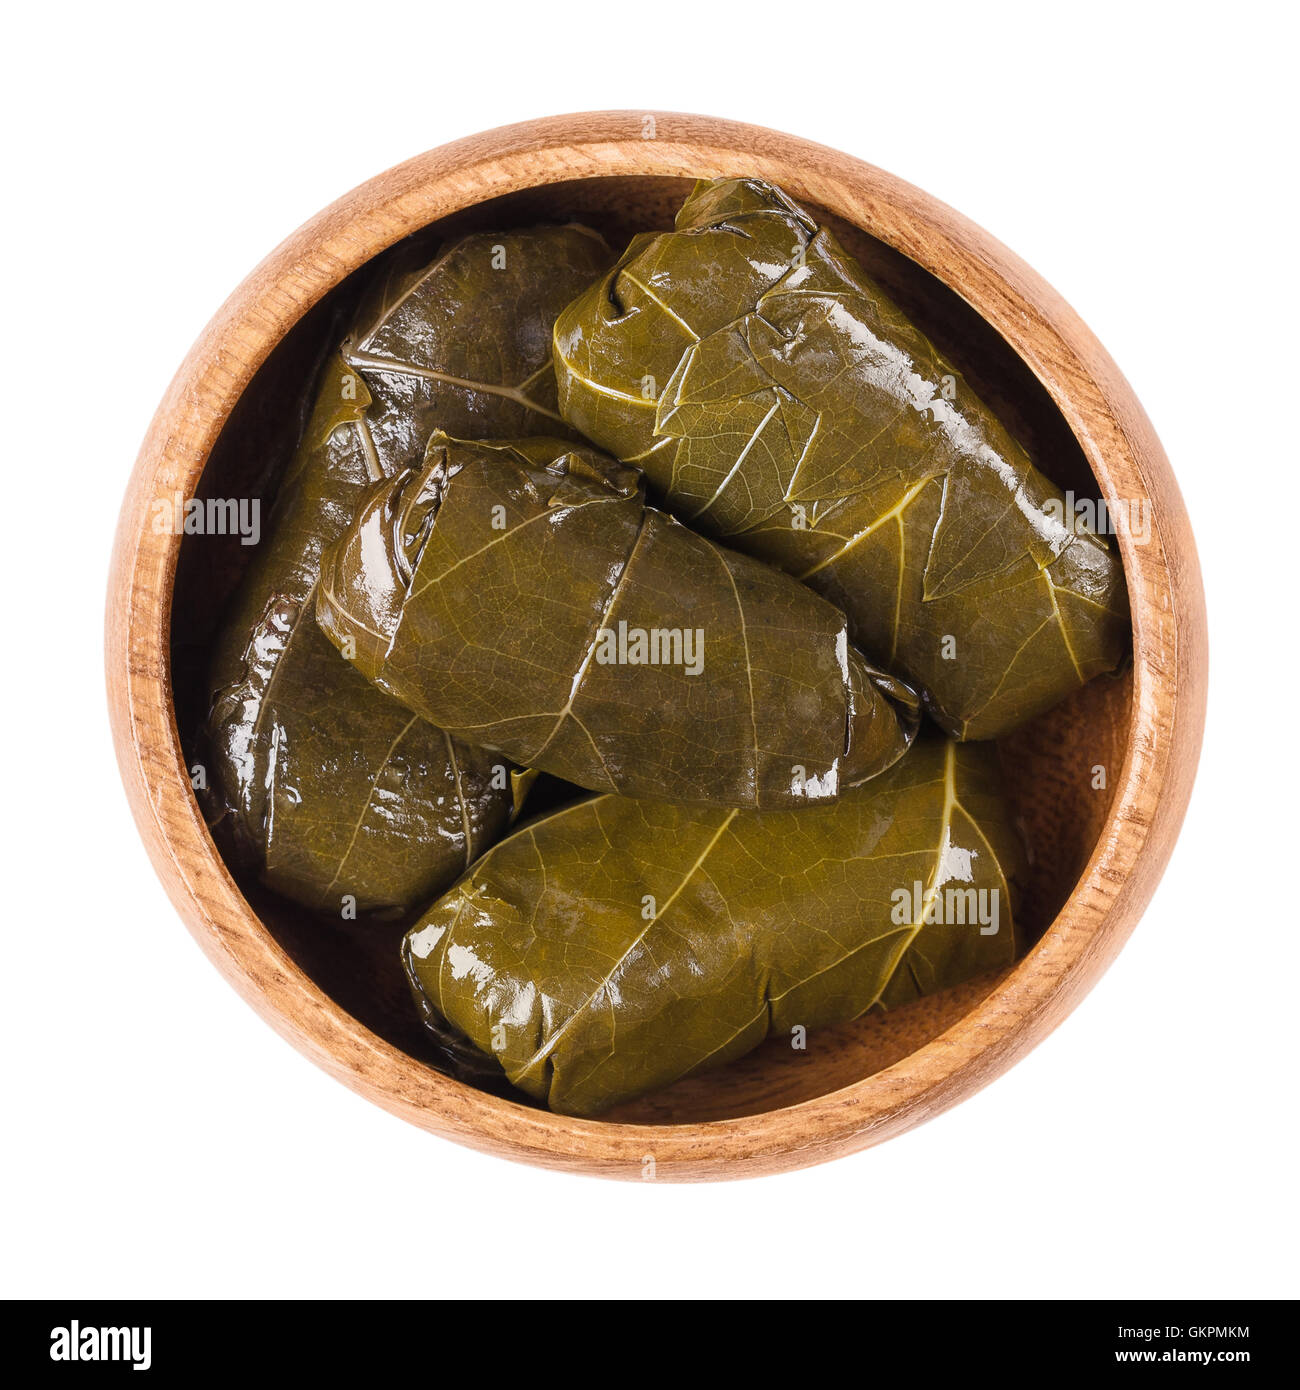 Dolma, feuilles de vigne farcies dans un bol sur fond blanc. Sarma en turc ou Dolmades dans la cuisine grecque. Banque D'Images